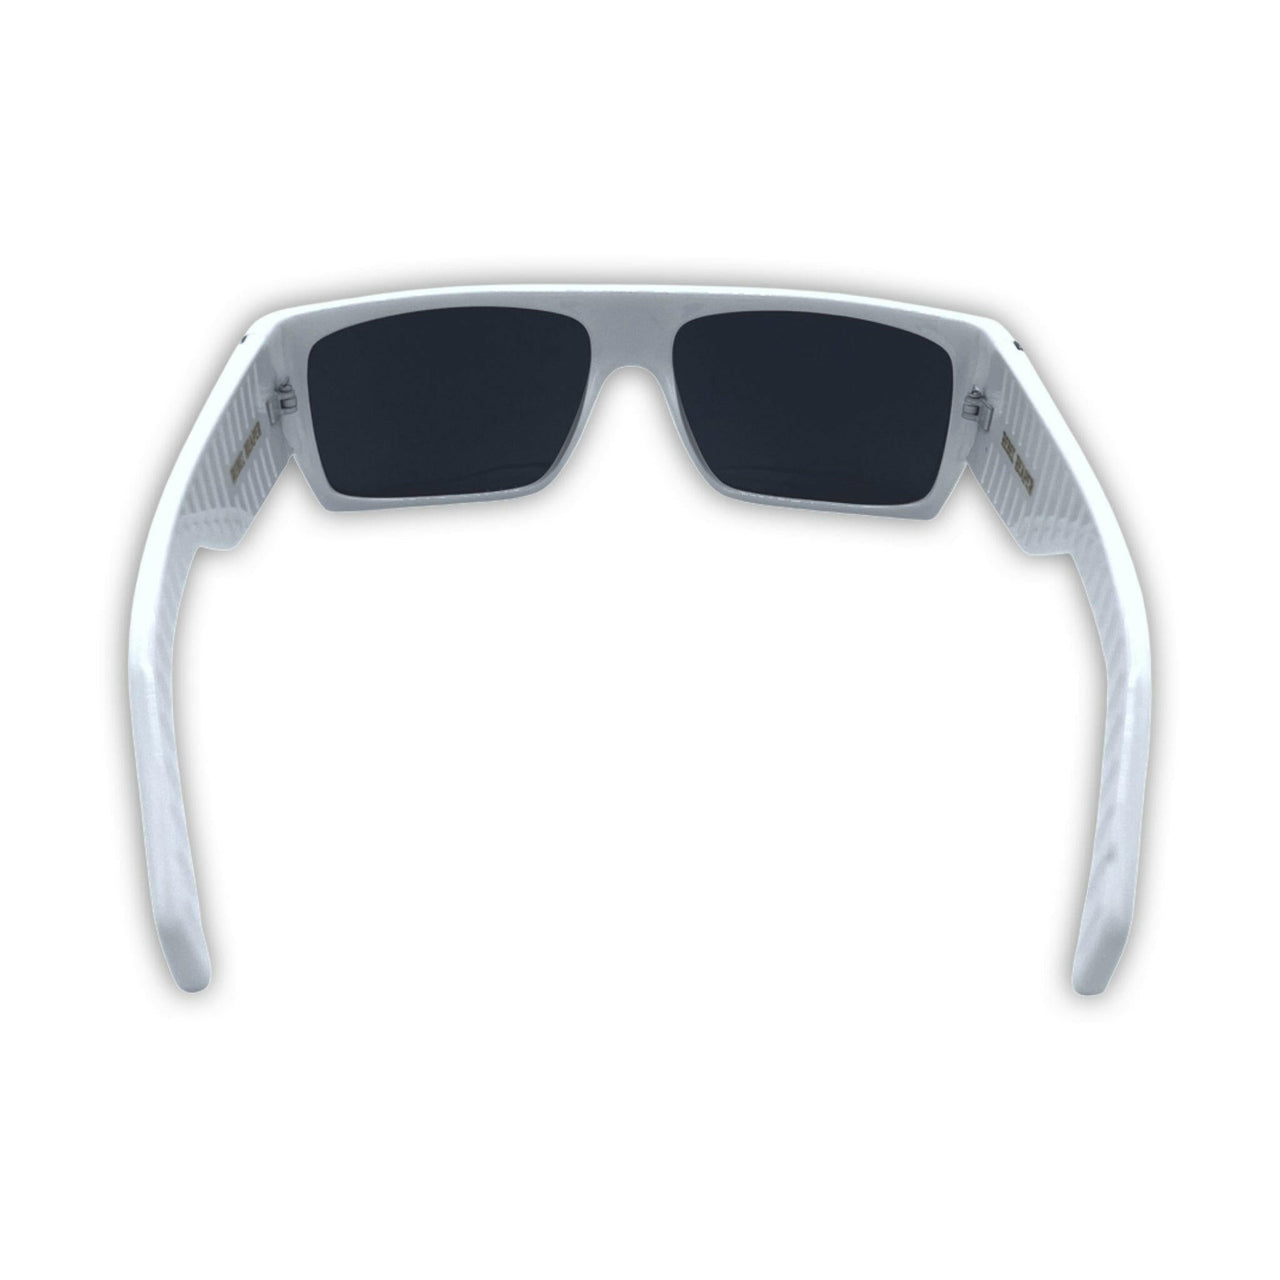 Retro White Sunglasses - Rebel Reaper Clothing Company Sunglasses